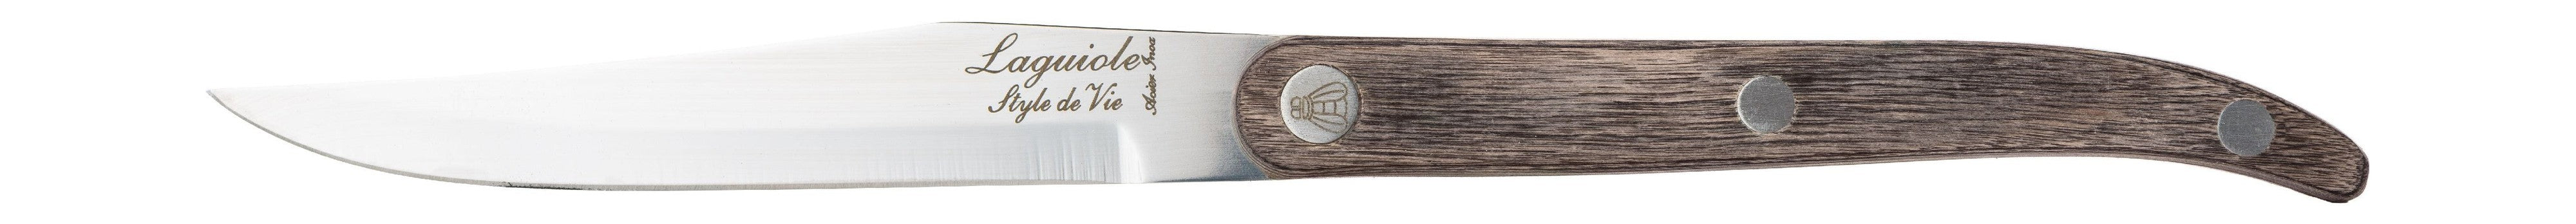 Estilo de Vie Authentique Laguiole Innovation Line Kneak Knives de 6 piezas, pakka gris con cuchilla suave